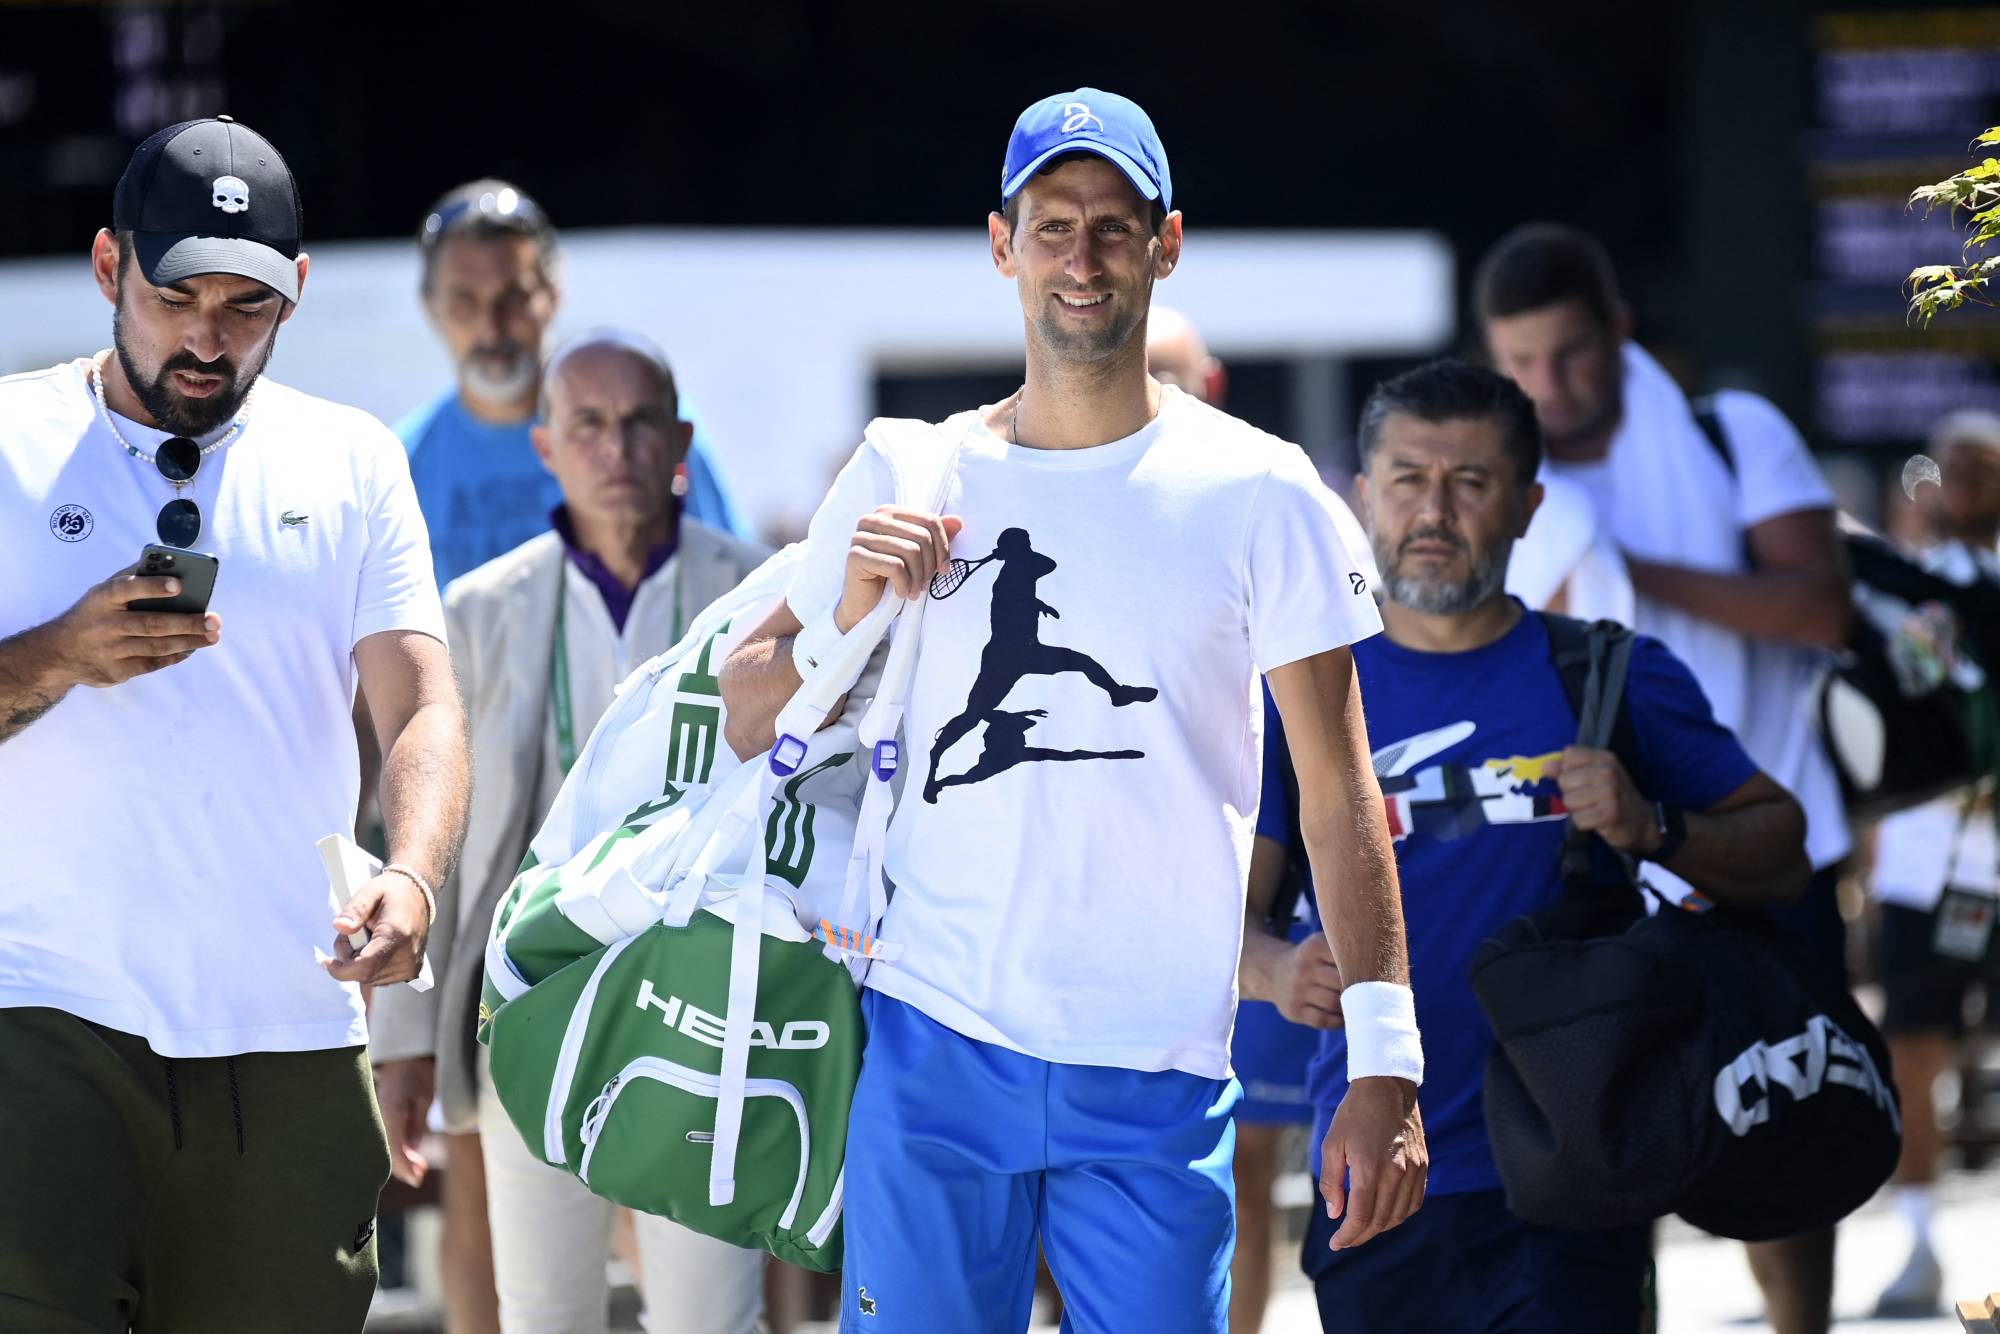 Novak Djokovic faces unexpected from Nick Kyrgios in Wimbledon final